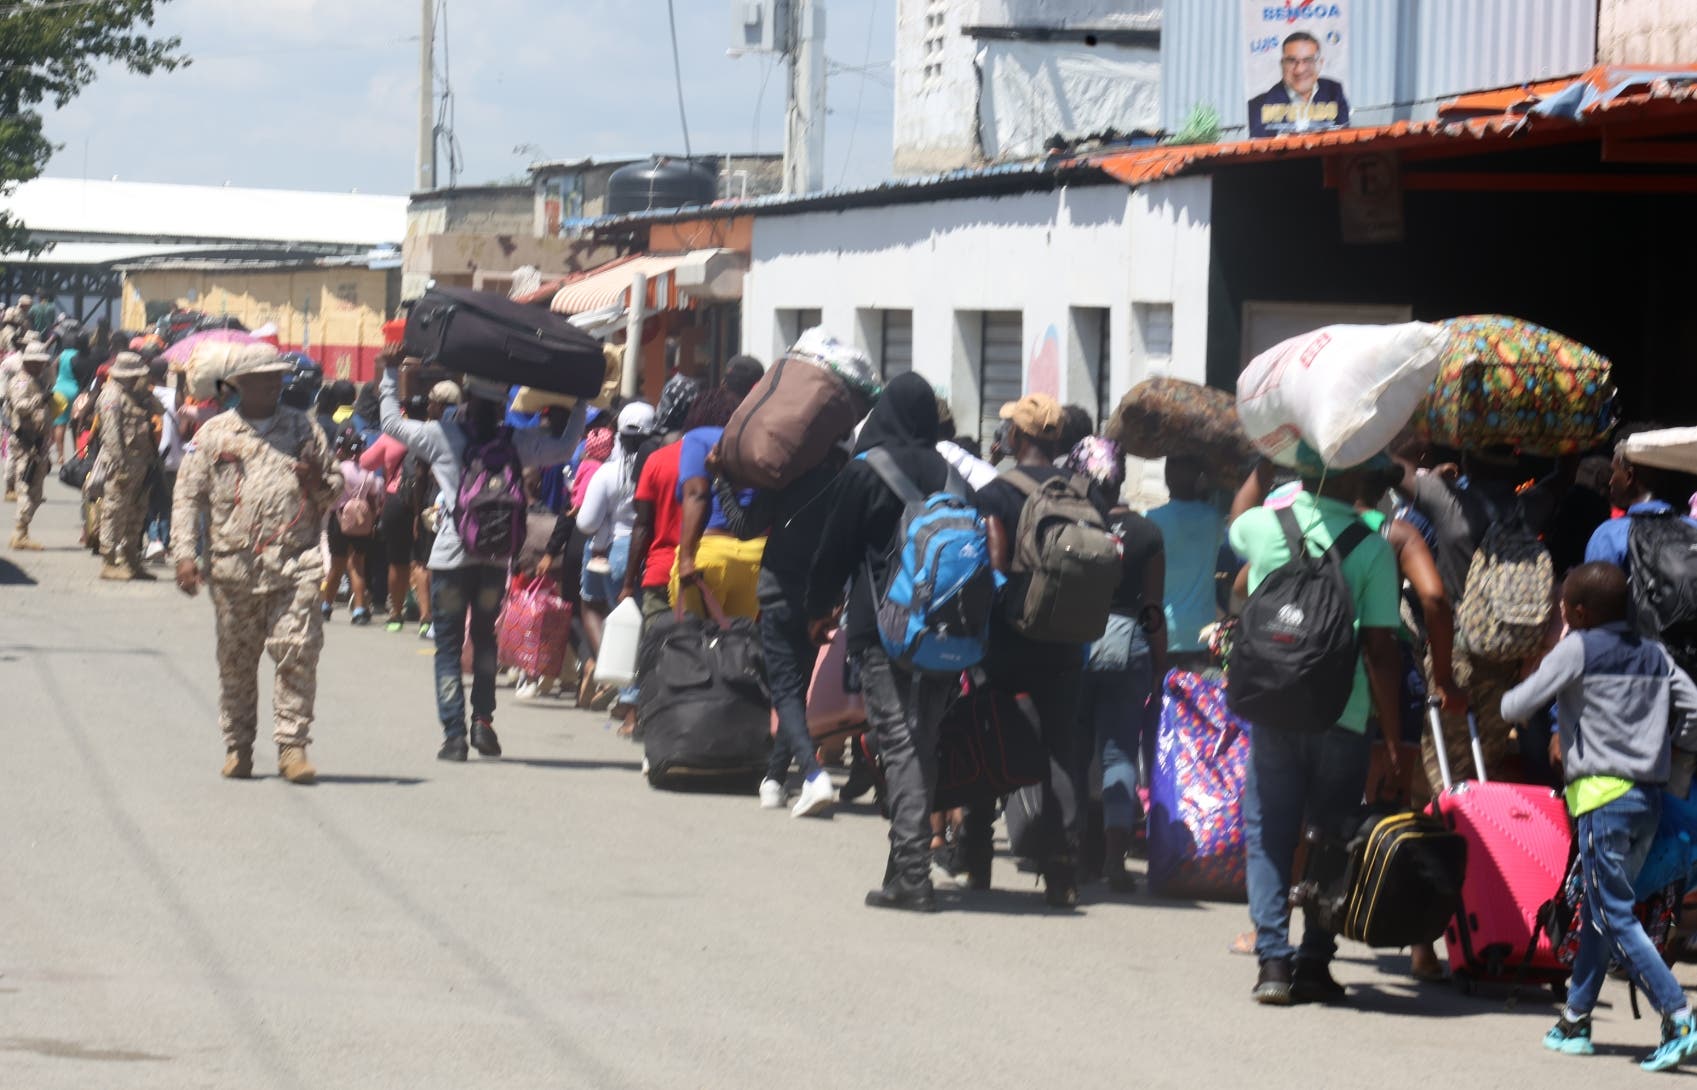 Haitianos siguen saliendo en masa hacia su país tras cierre de frontera